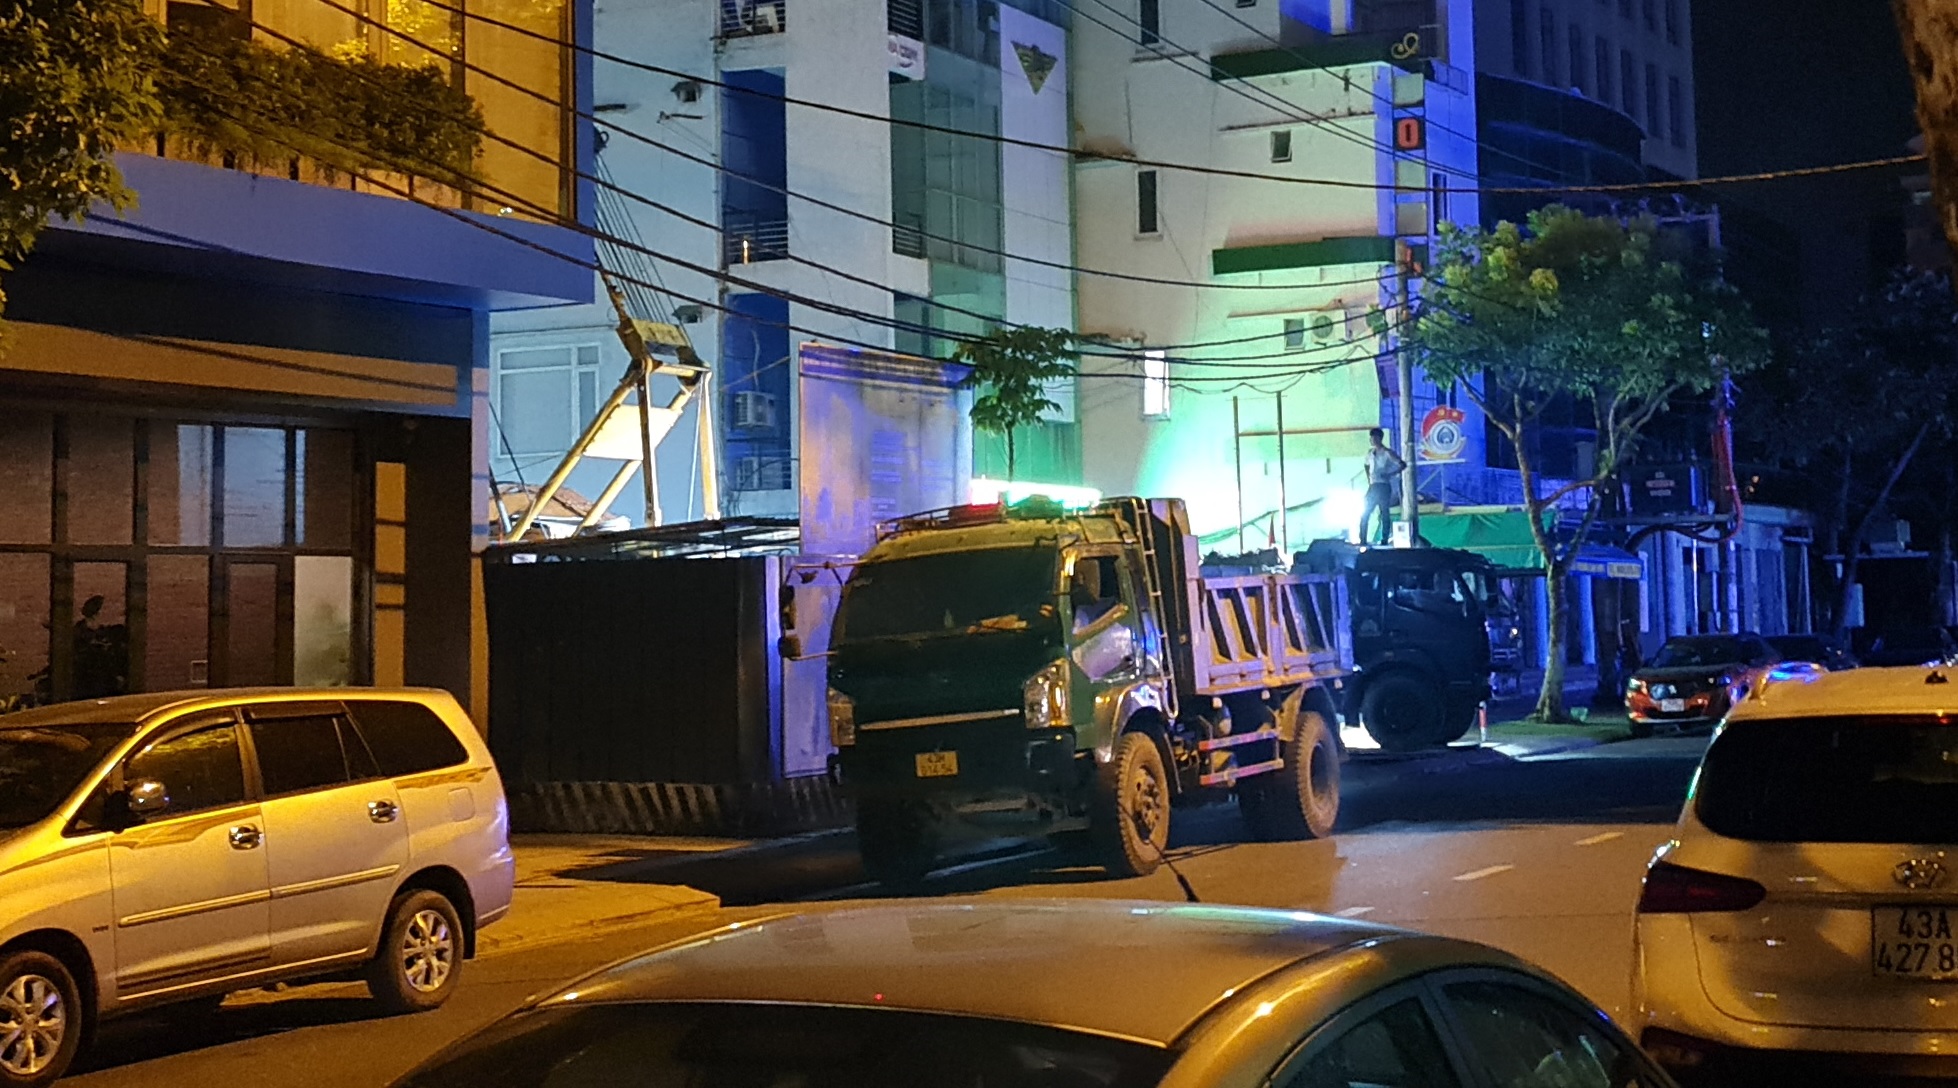 Đoàn xe tải trọng lớn lộng hành vào đường cấm ngay trung tâm Đà Nẵng - Ảnh 5.